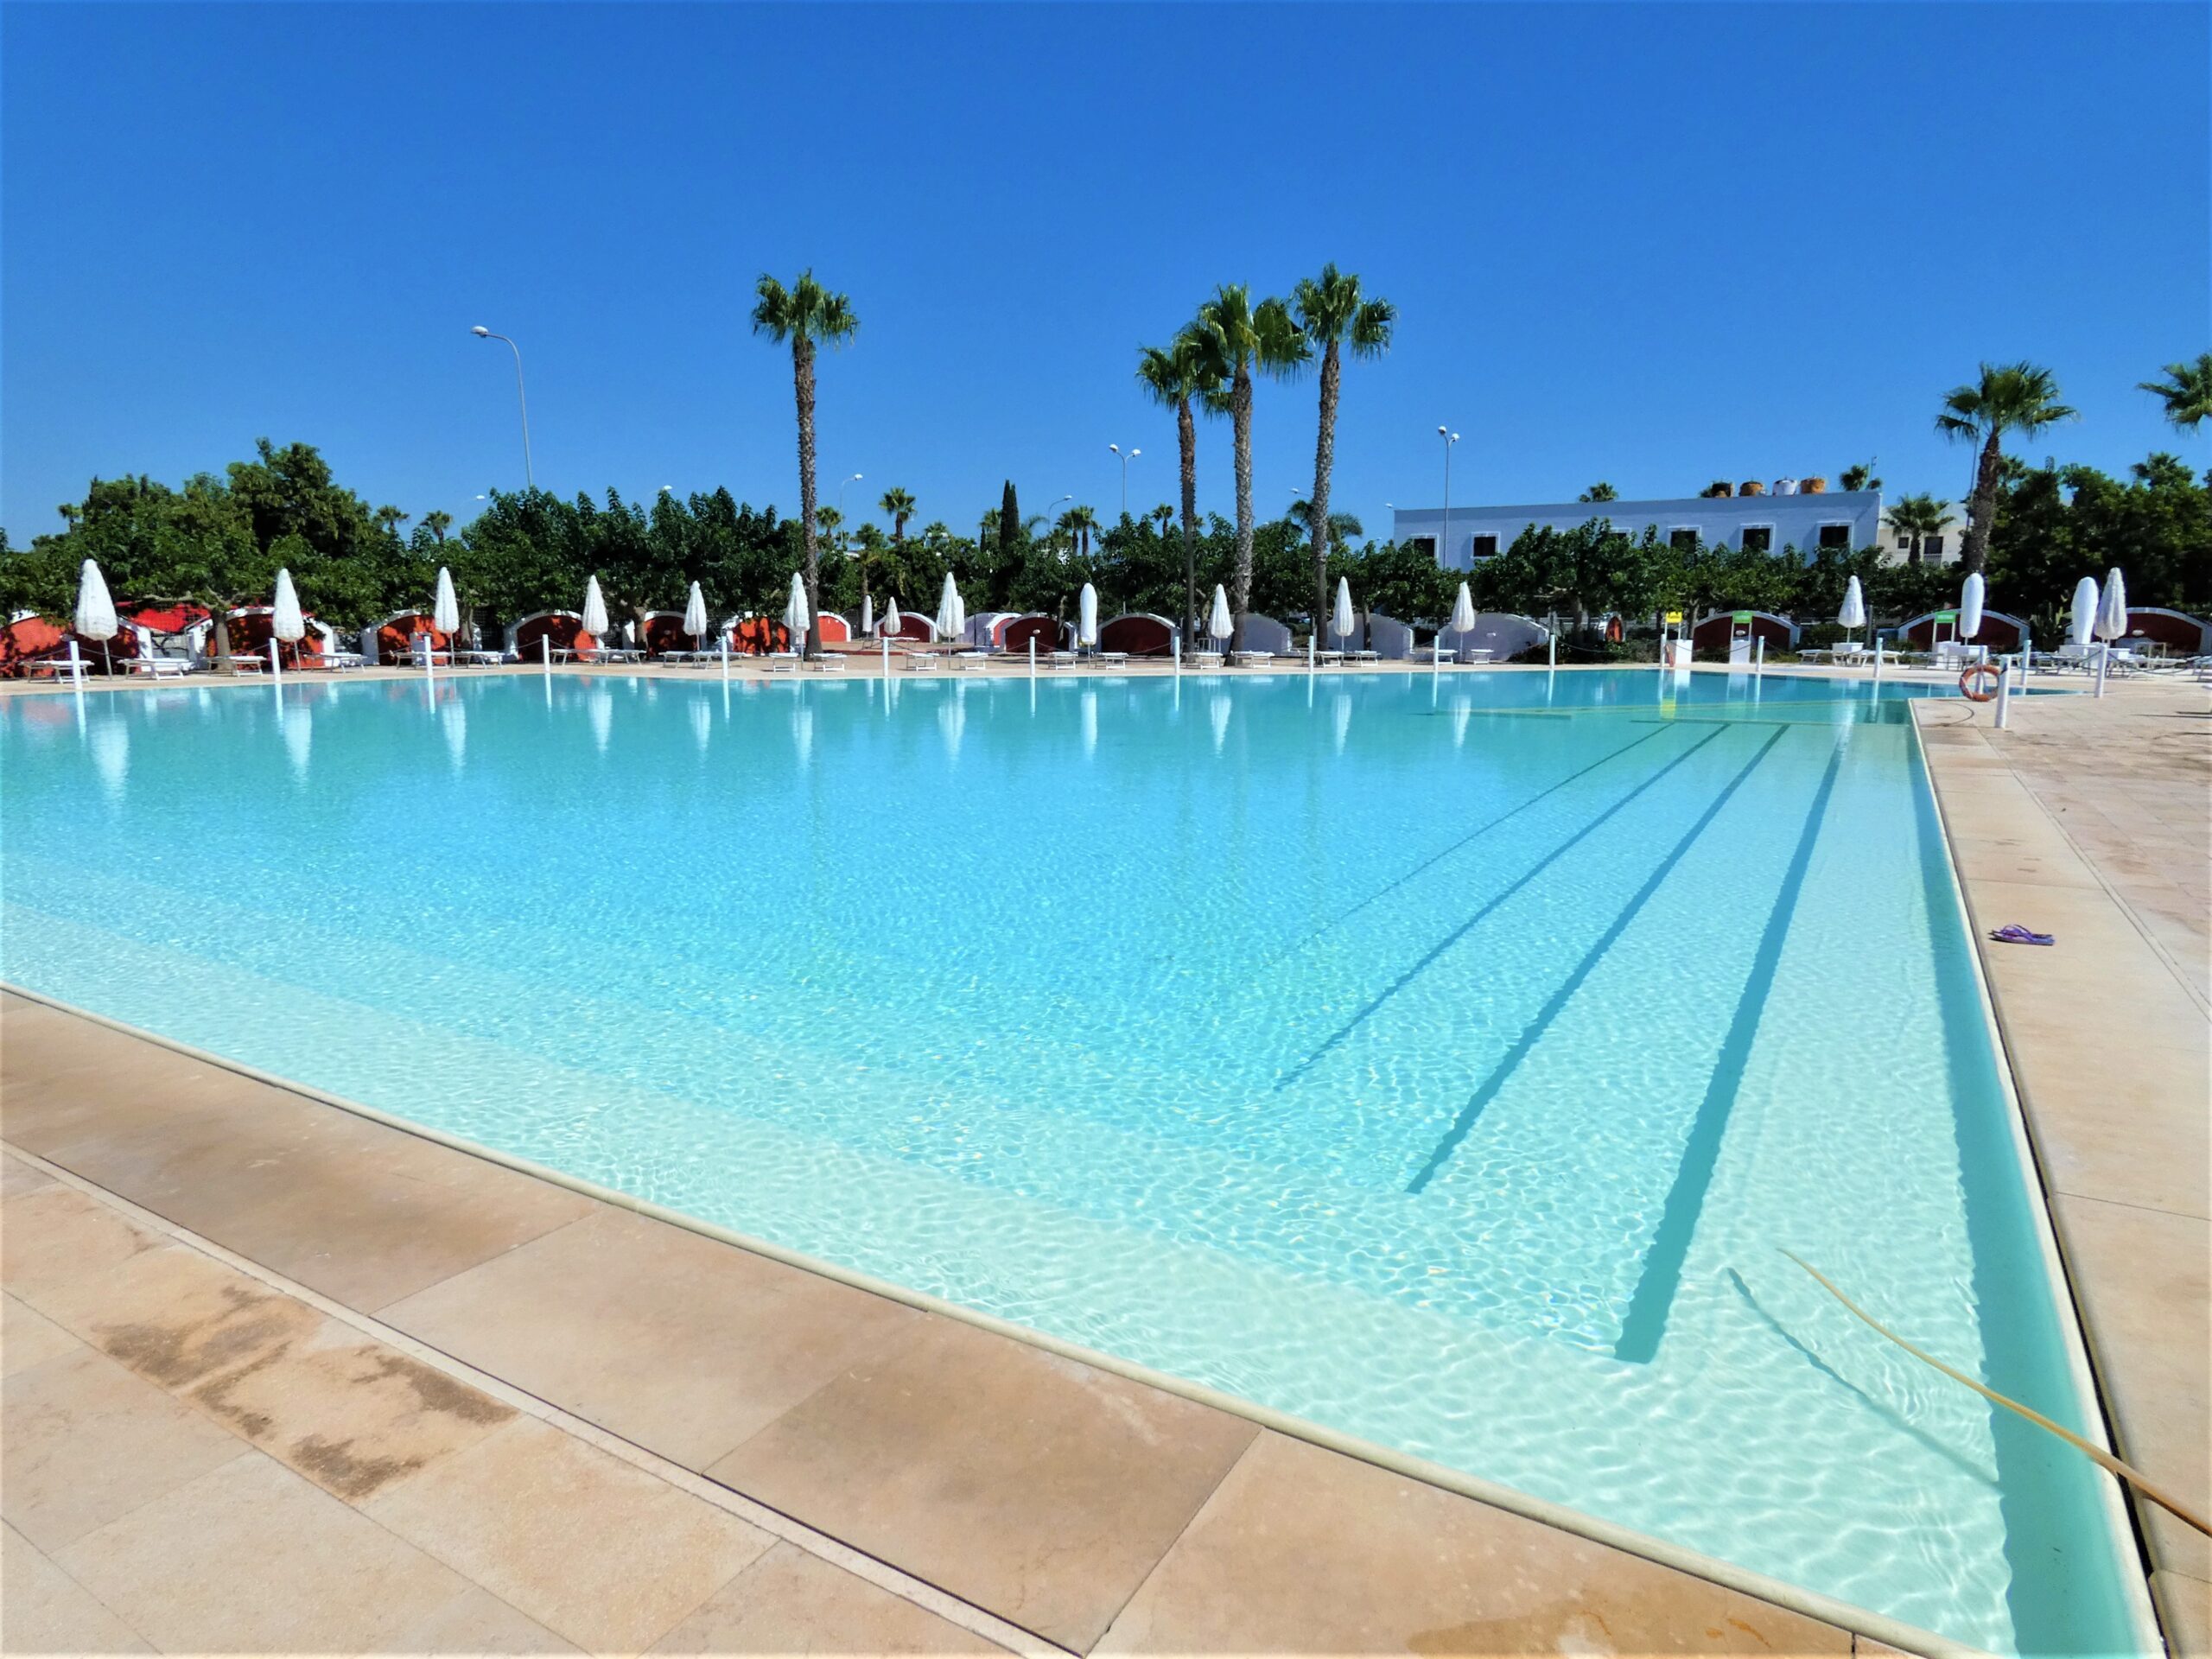 Villa Orione, Villaggio Chiusurelle piscina e campi calcetto – Porto Cesareo (LE)